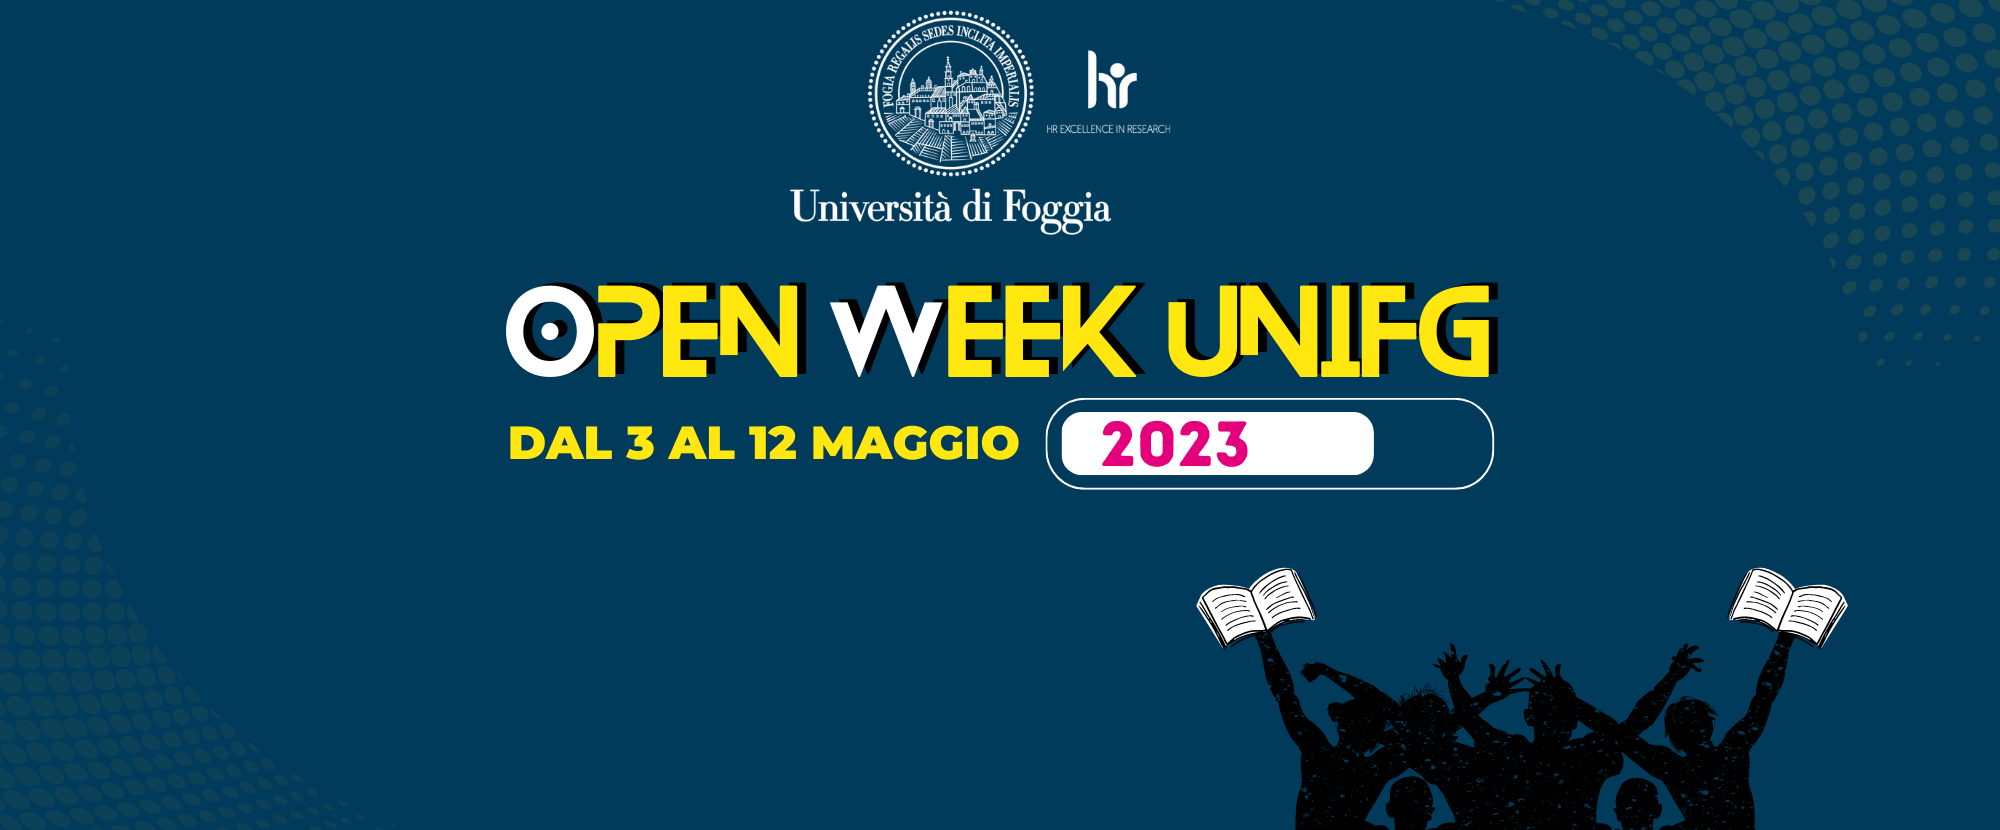 Open week Unifg 2023